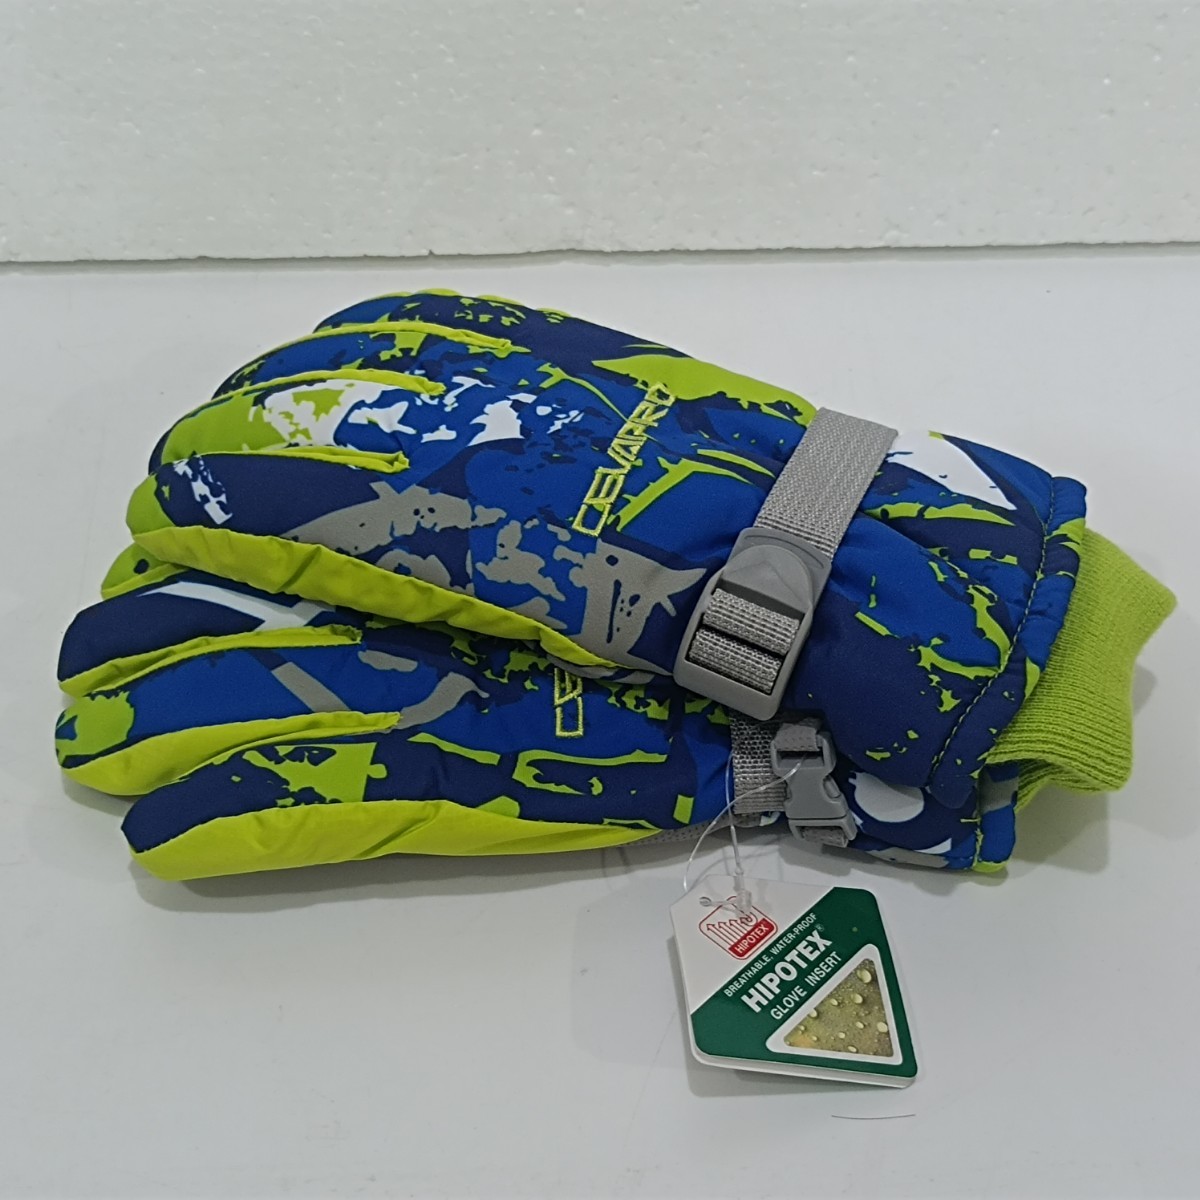 Yobenki лыжи перчатка ребенок перчатки перчатка L размер водонепроницаемый защищающий от холода теплоизоляция толстый снег сверху спорт унисекс зеленый y1101-1